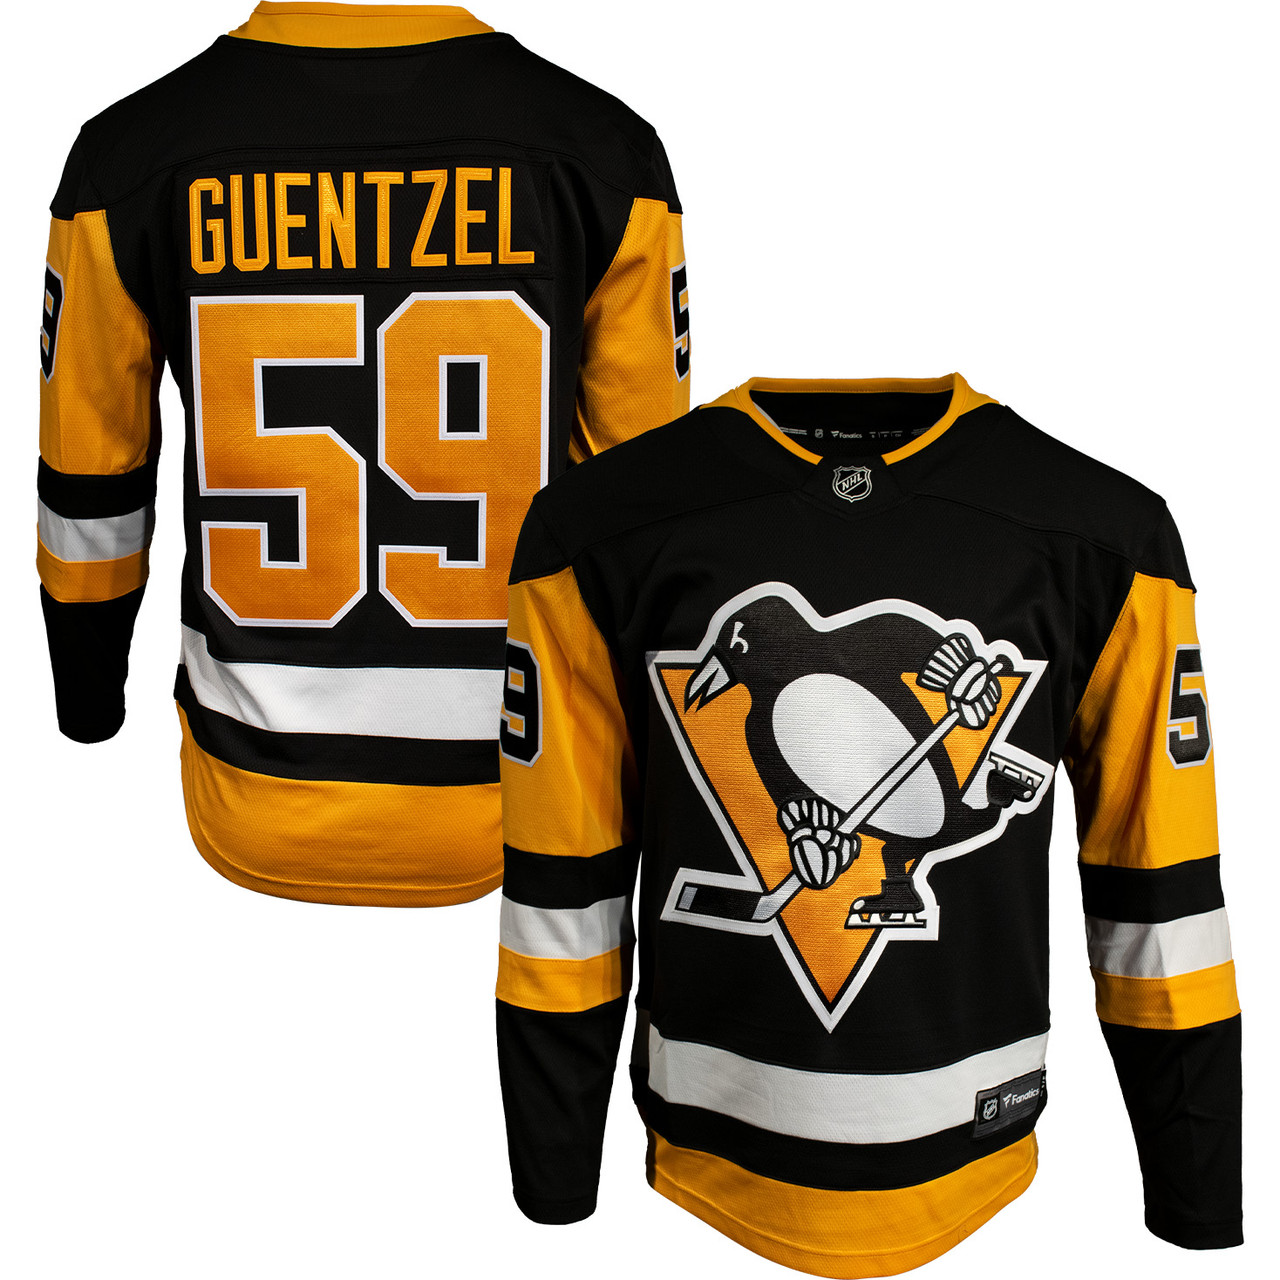 Jake Guentzel Jerseys & Gear in NHL Fan Shop 